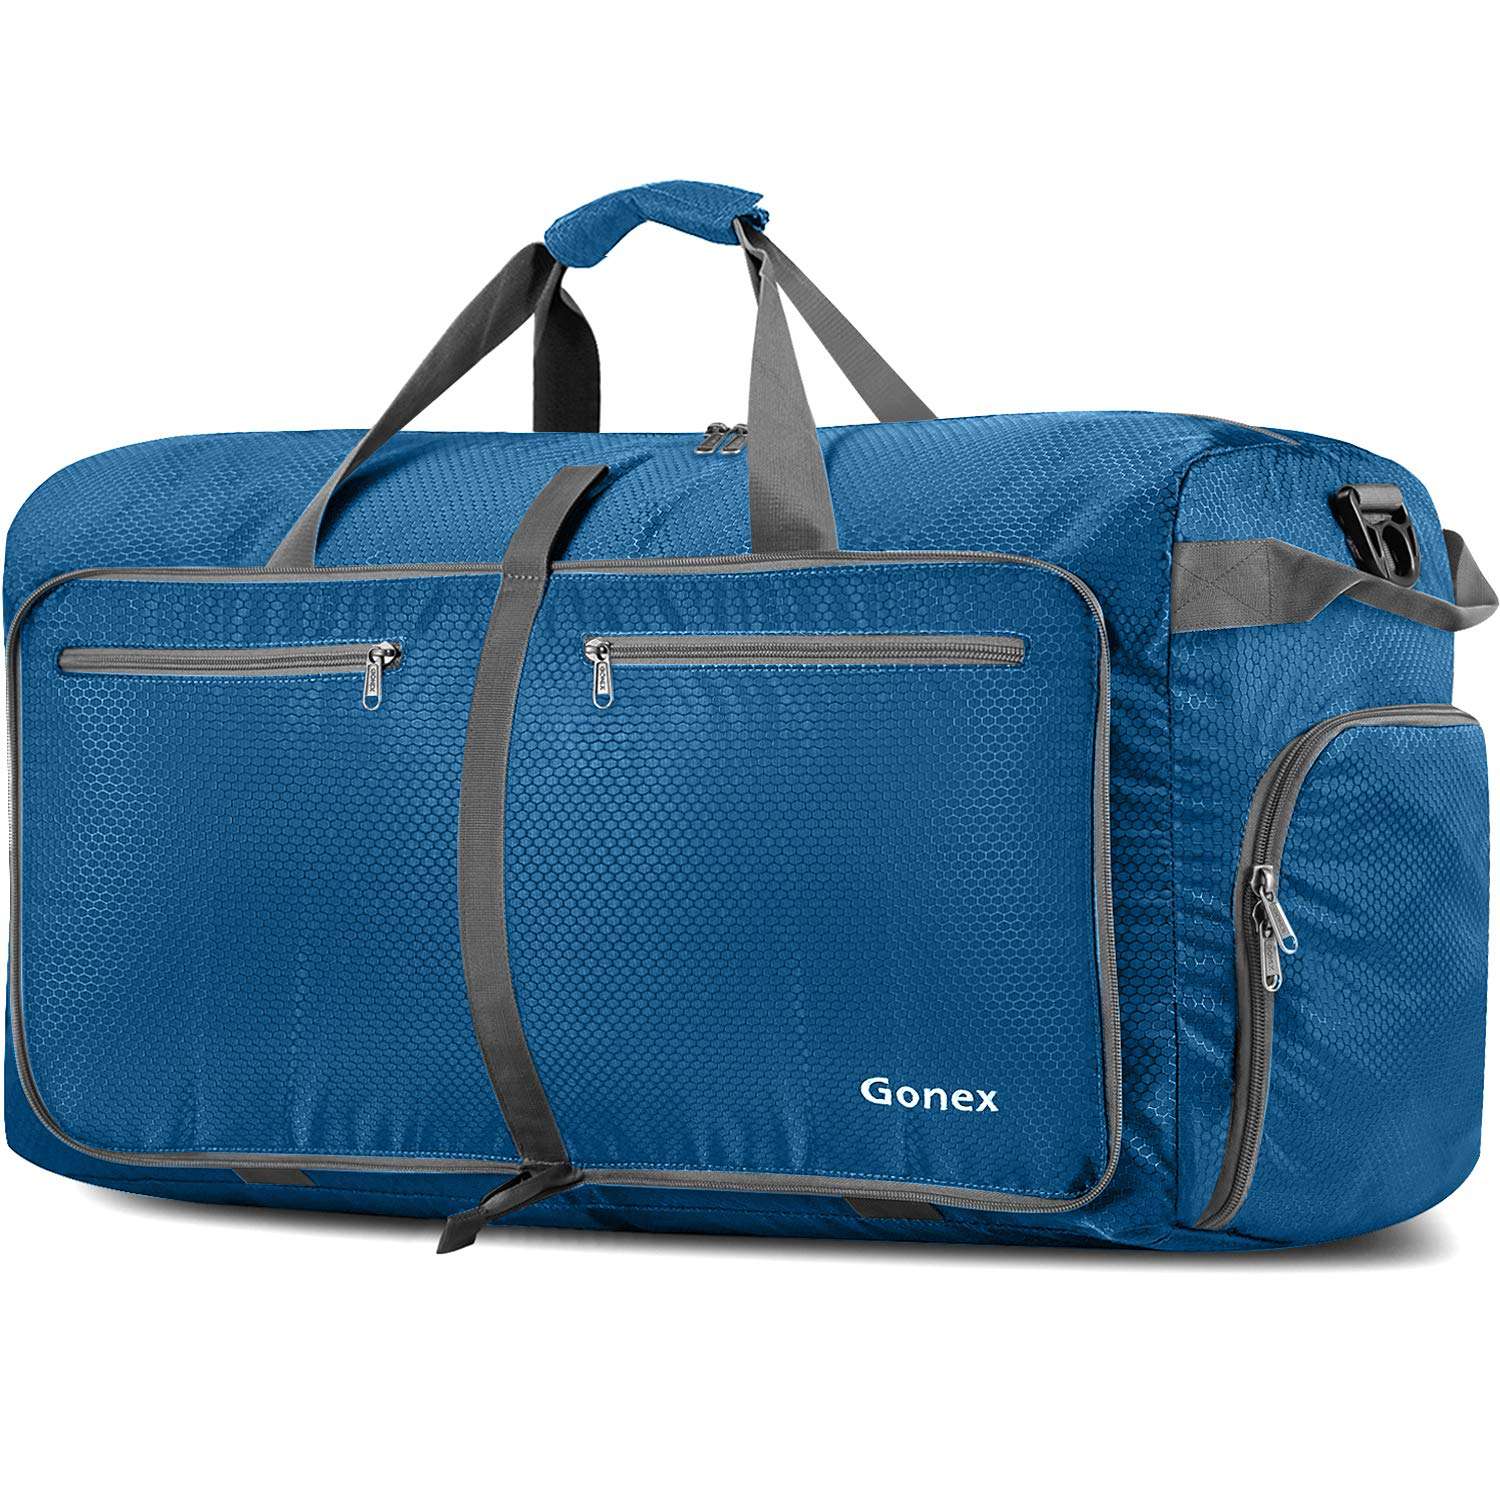 Gonex 40L packable travel duffle bag